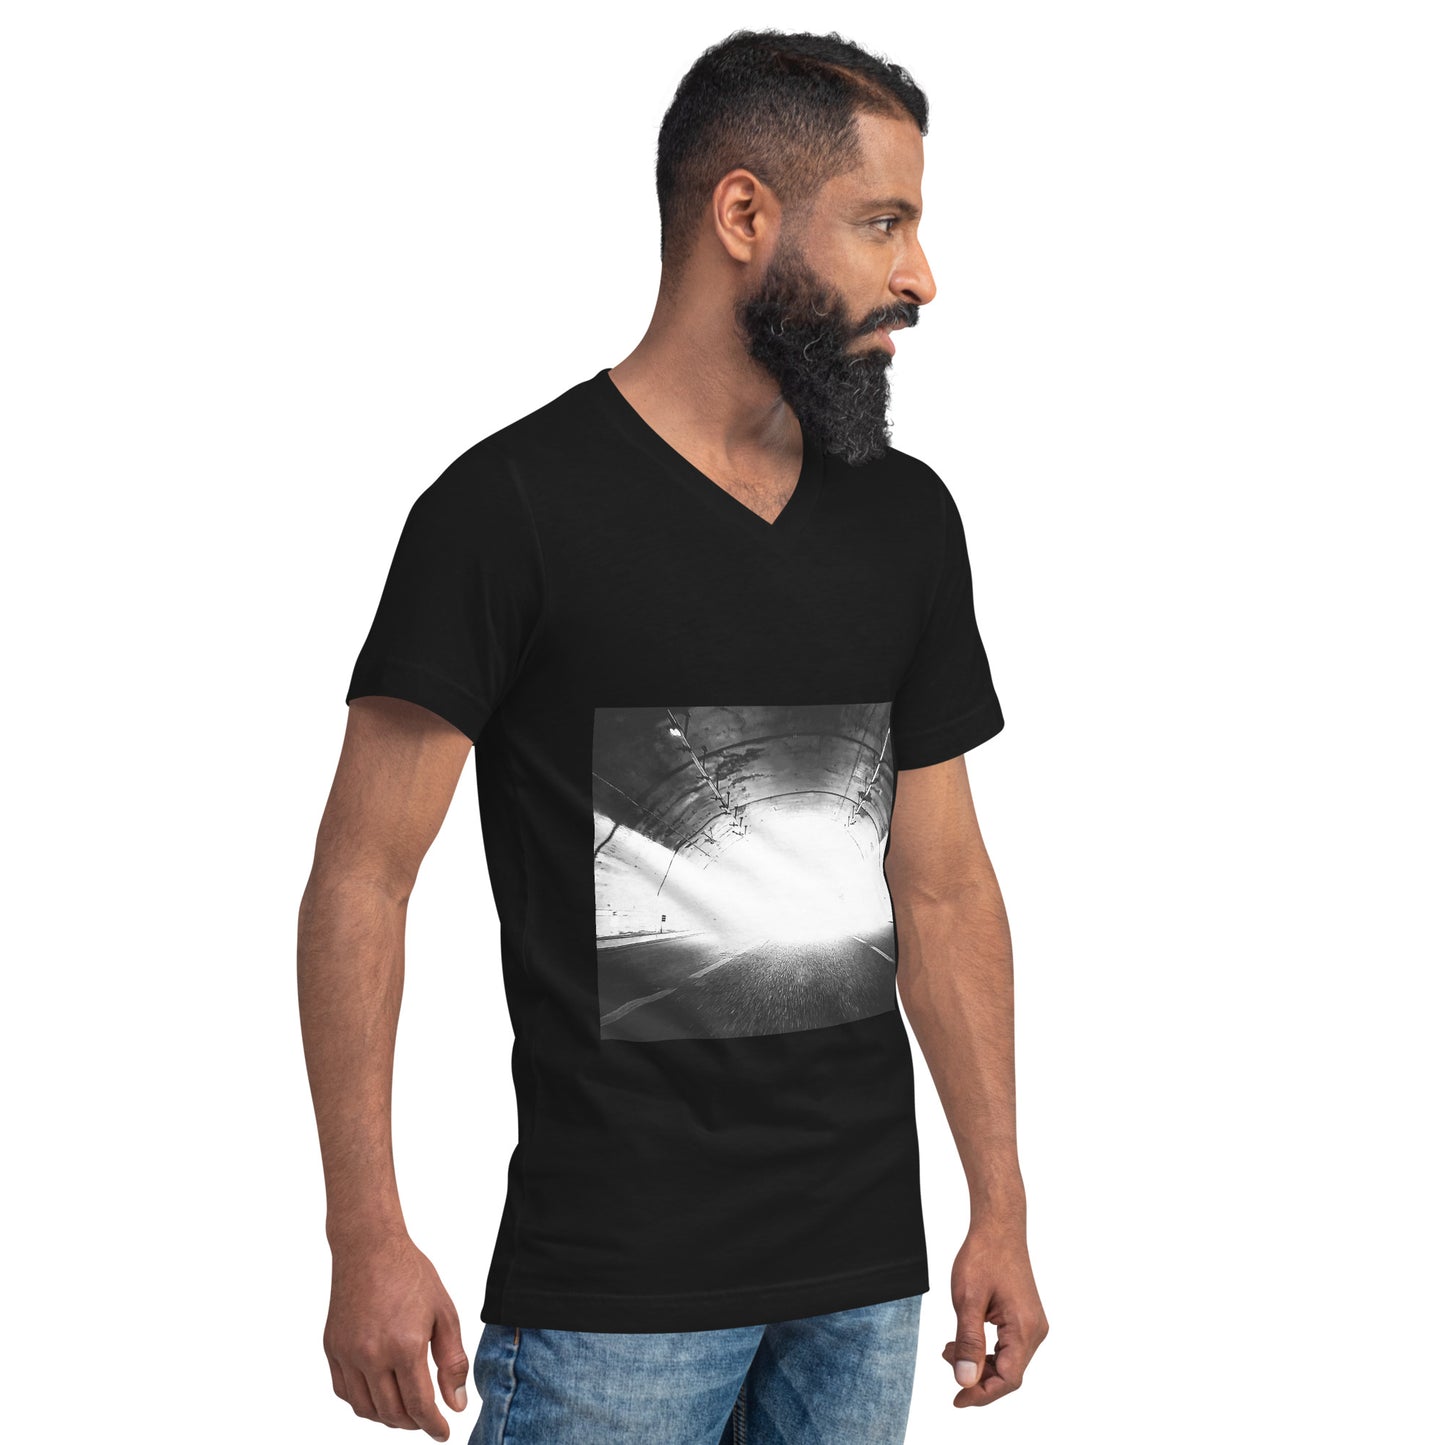 Unisex short-sleeved V-neck t-shirt